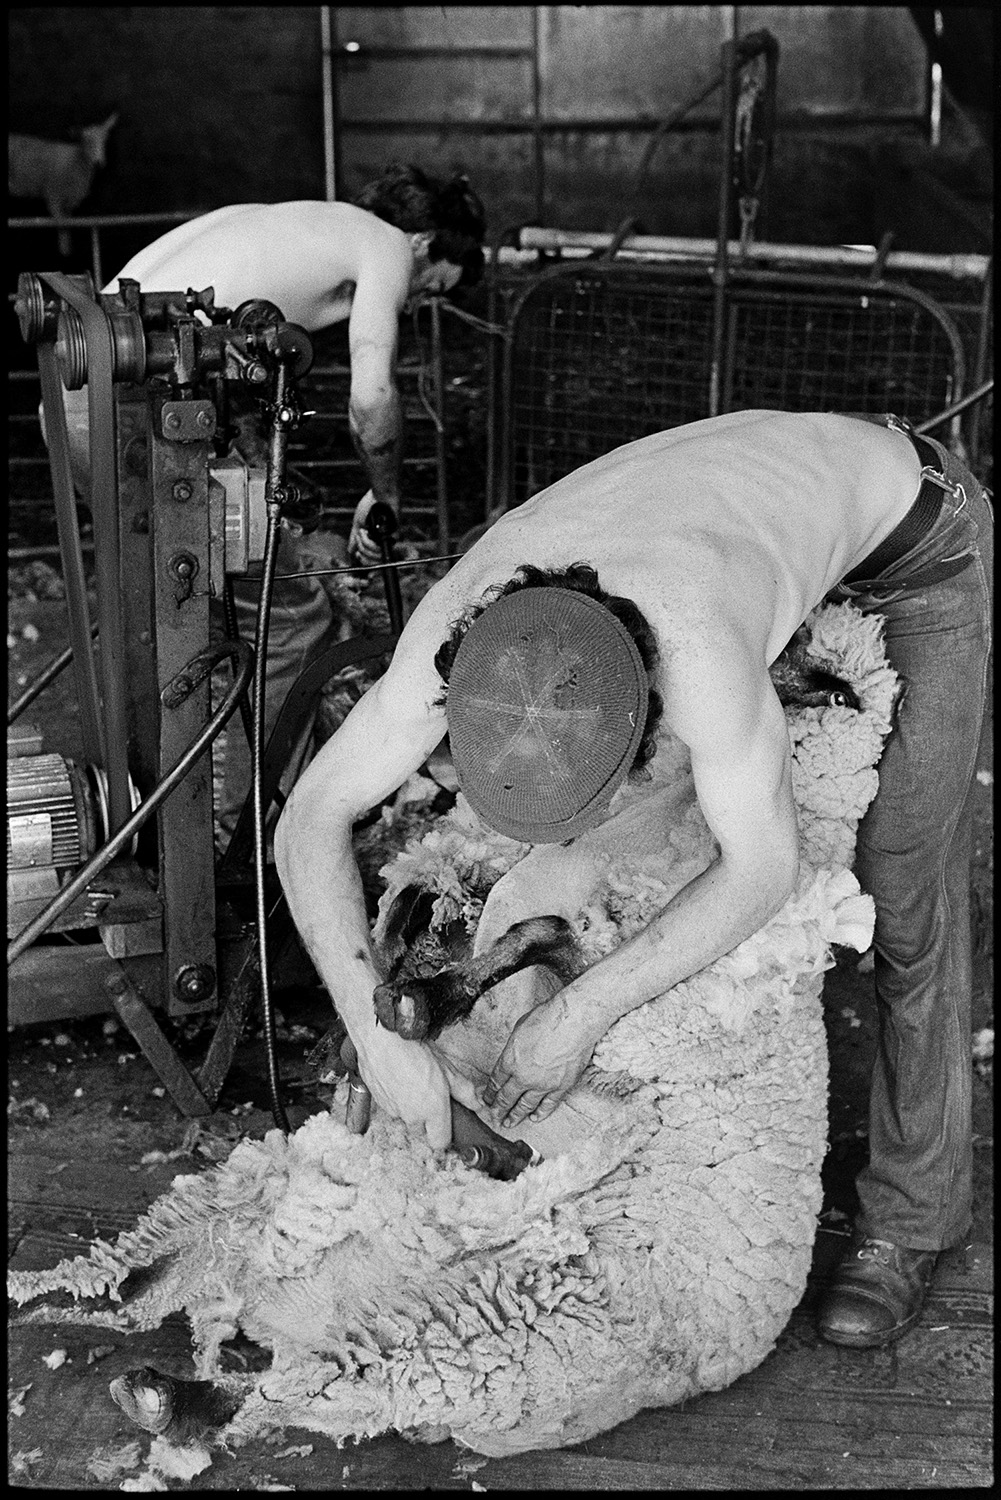 Shearing sheep. 
[David Ward and Graham Ward shearing sheep using shearing machines in a barn at Parsonage, Iddesleigh.]